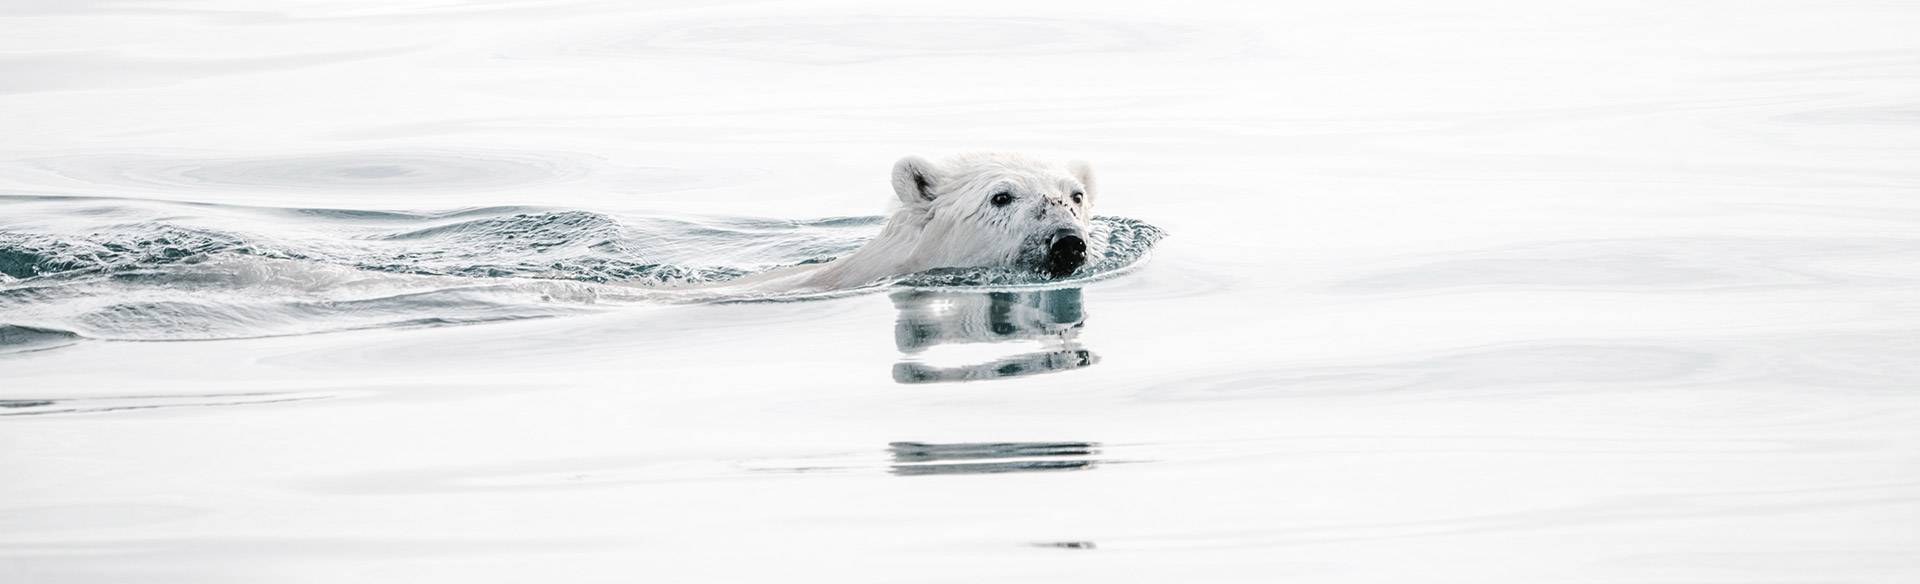 Nage d'un ours blanc dans les eaux de la mer arctique